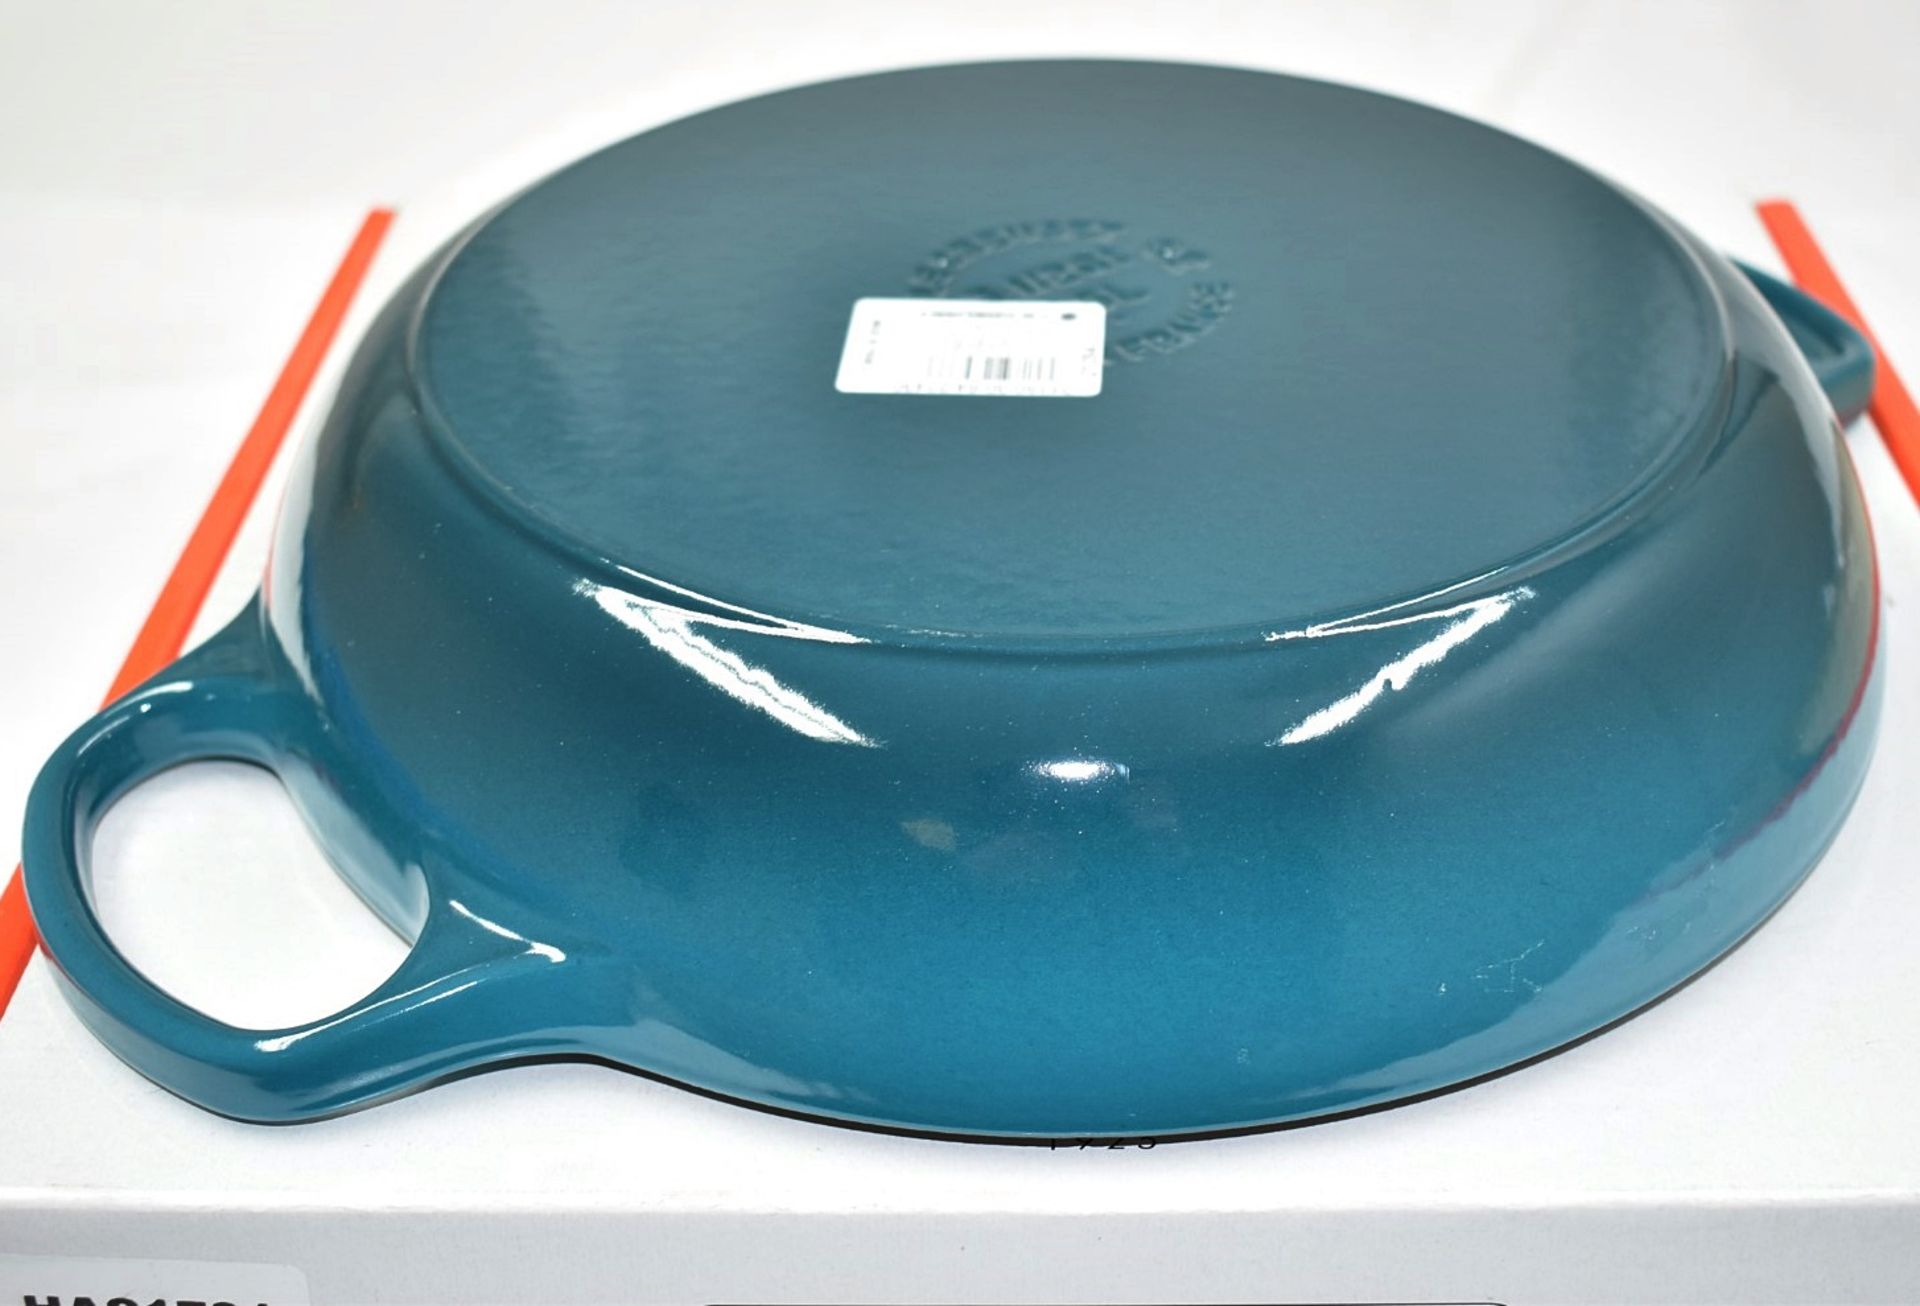 1 x LE CREUSET 'Signature' Enamelled Cast Iron Shallow Casserole Dish (30cm) - Original RRP £270.00 - Image 8 of 17